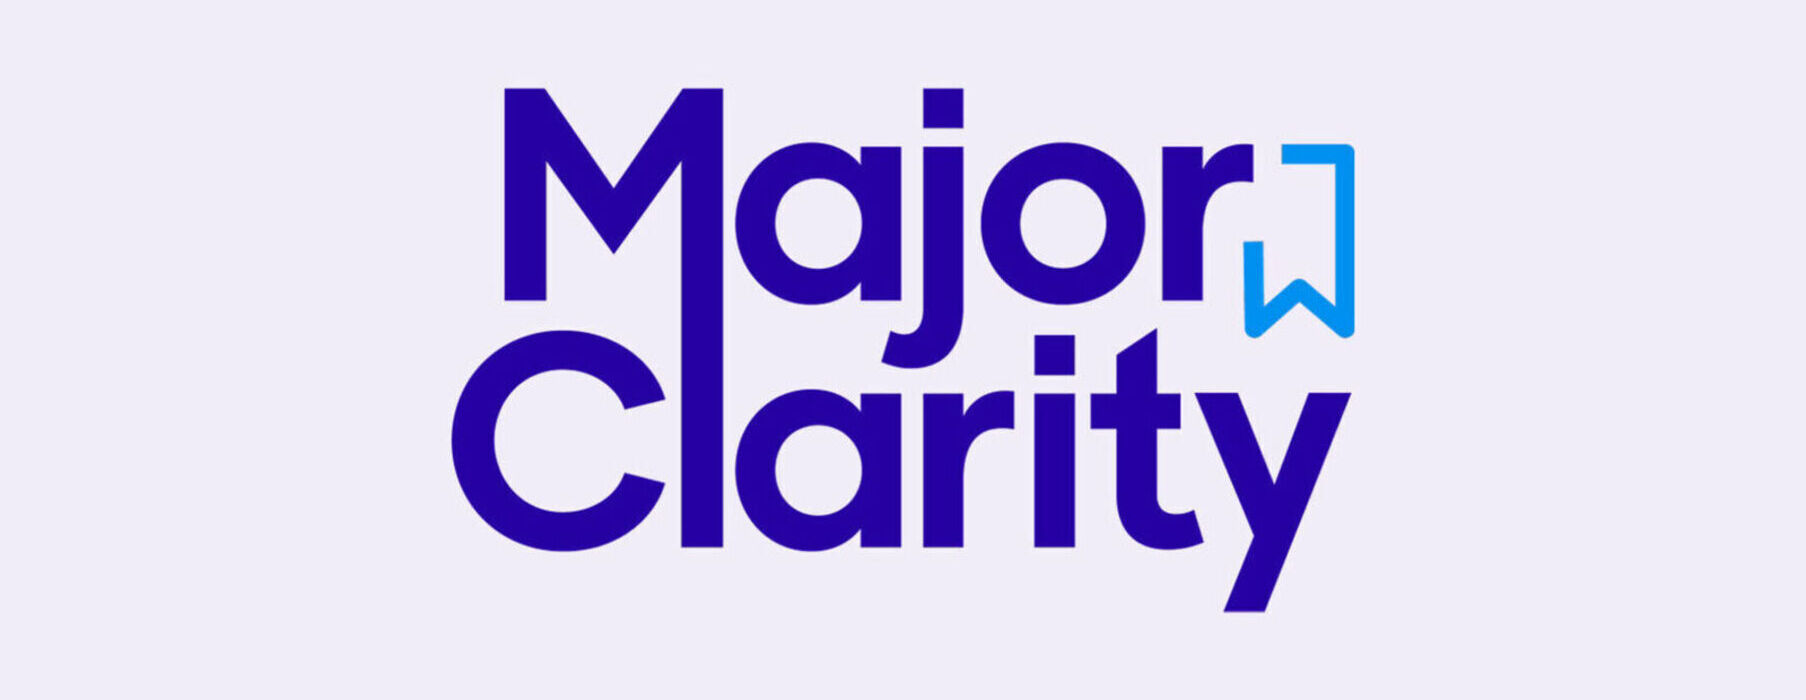 Major clarity logo3